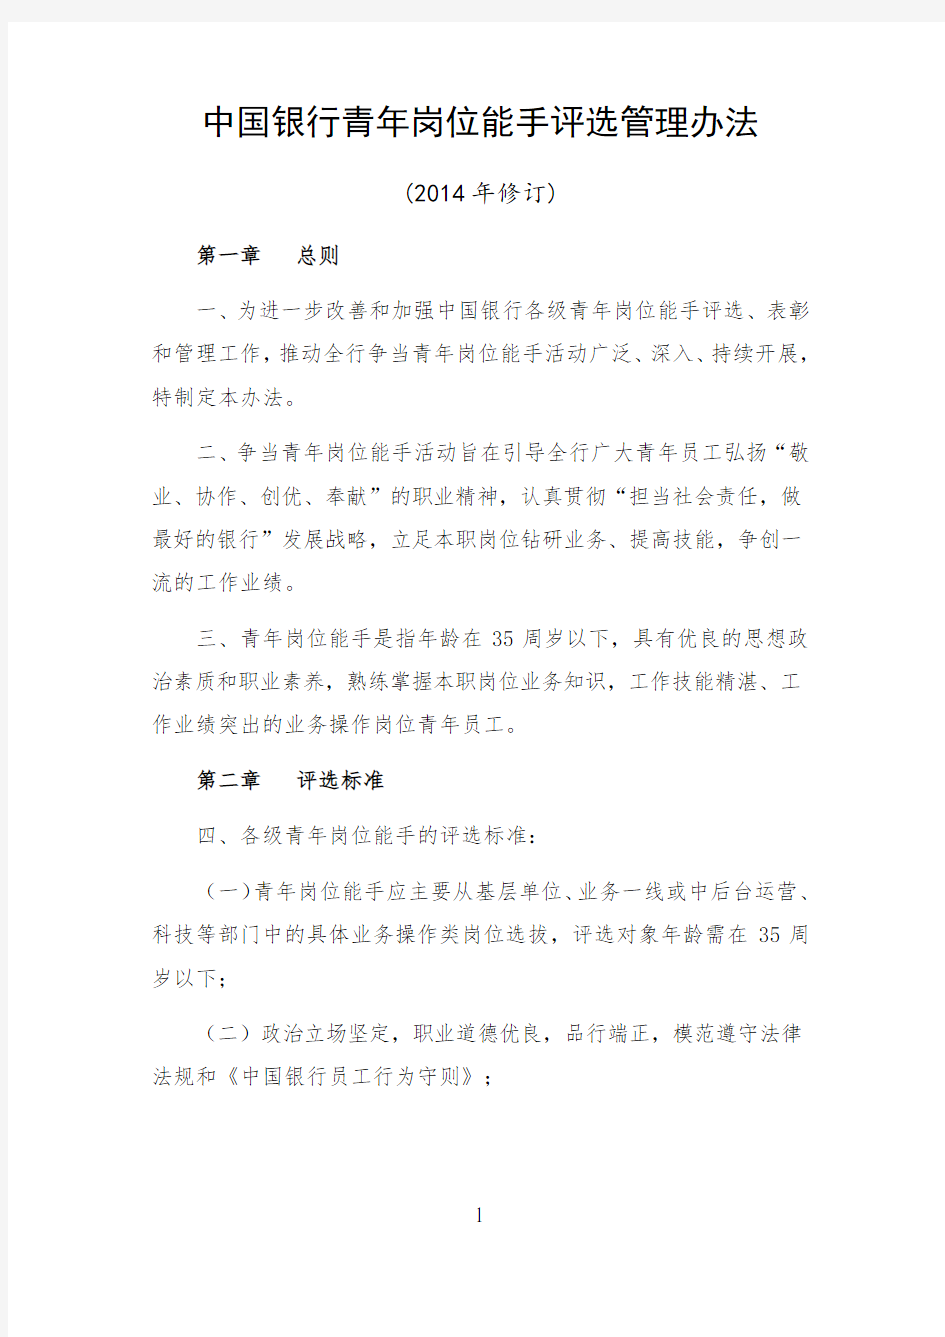 中国银行青年岗位能手评选管理办法(2014年修订)